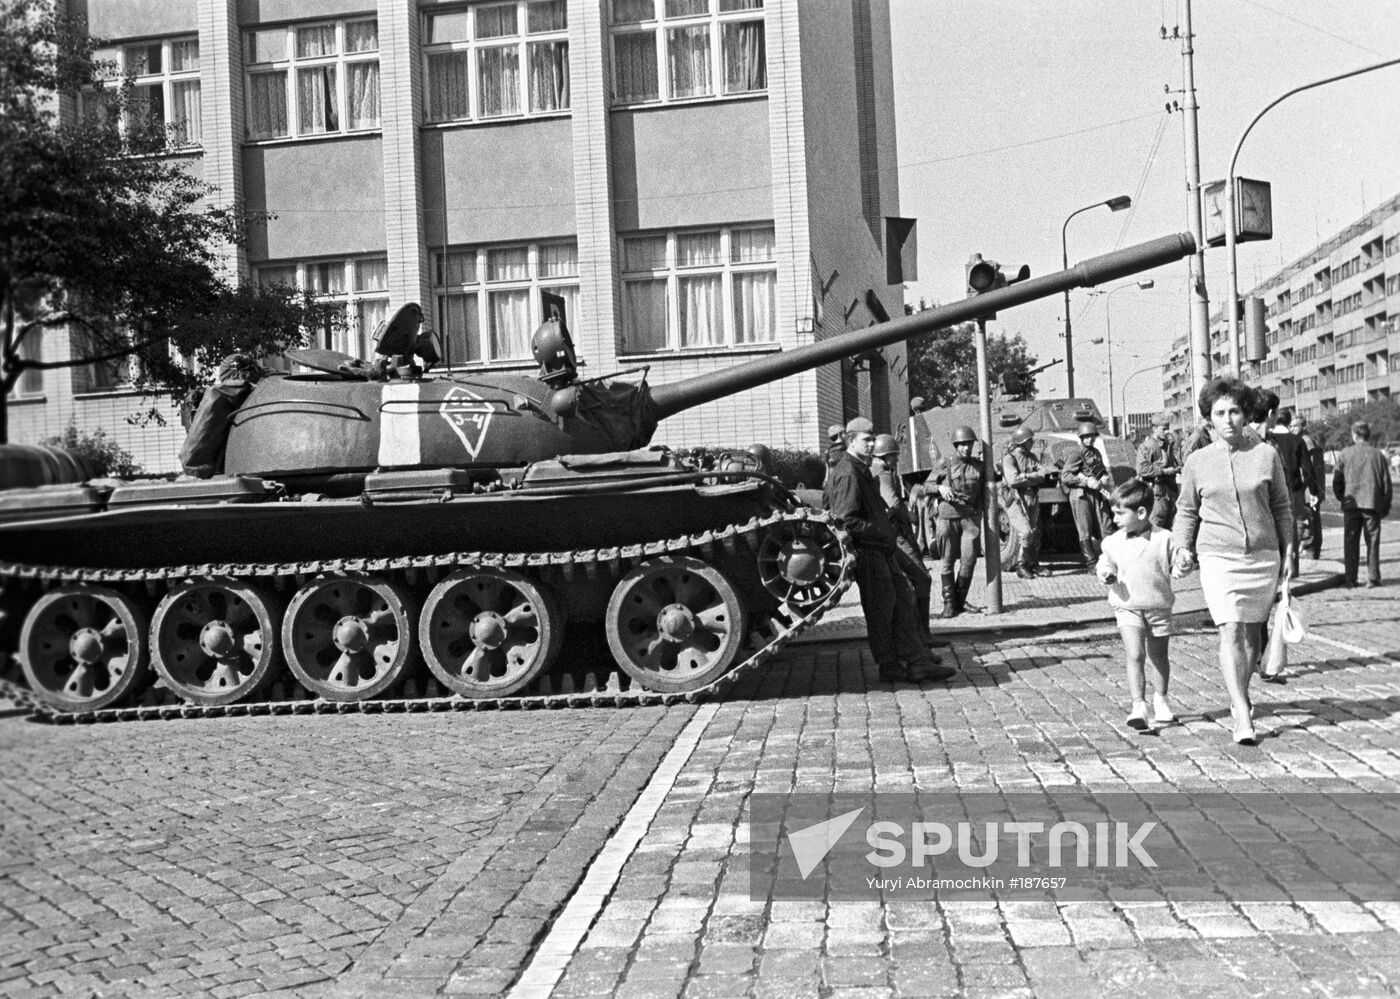 Soviet troops tanks Czech 